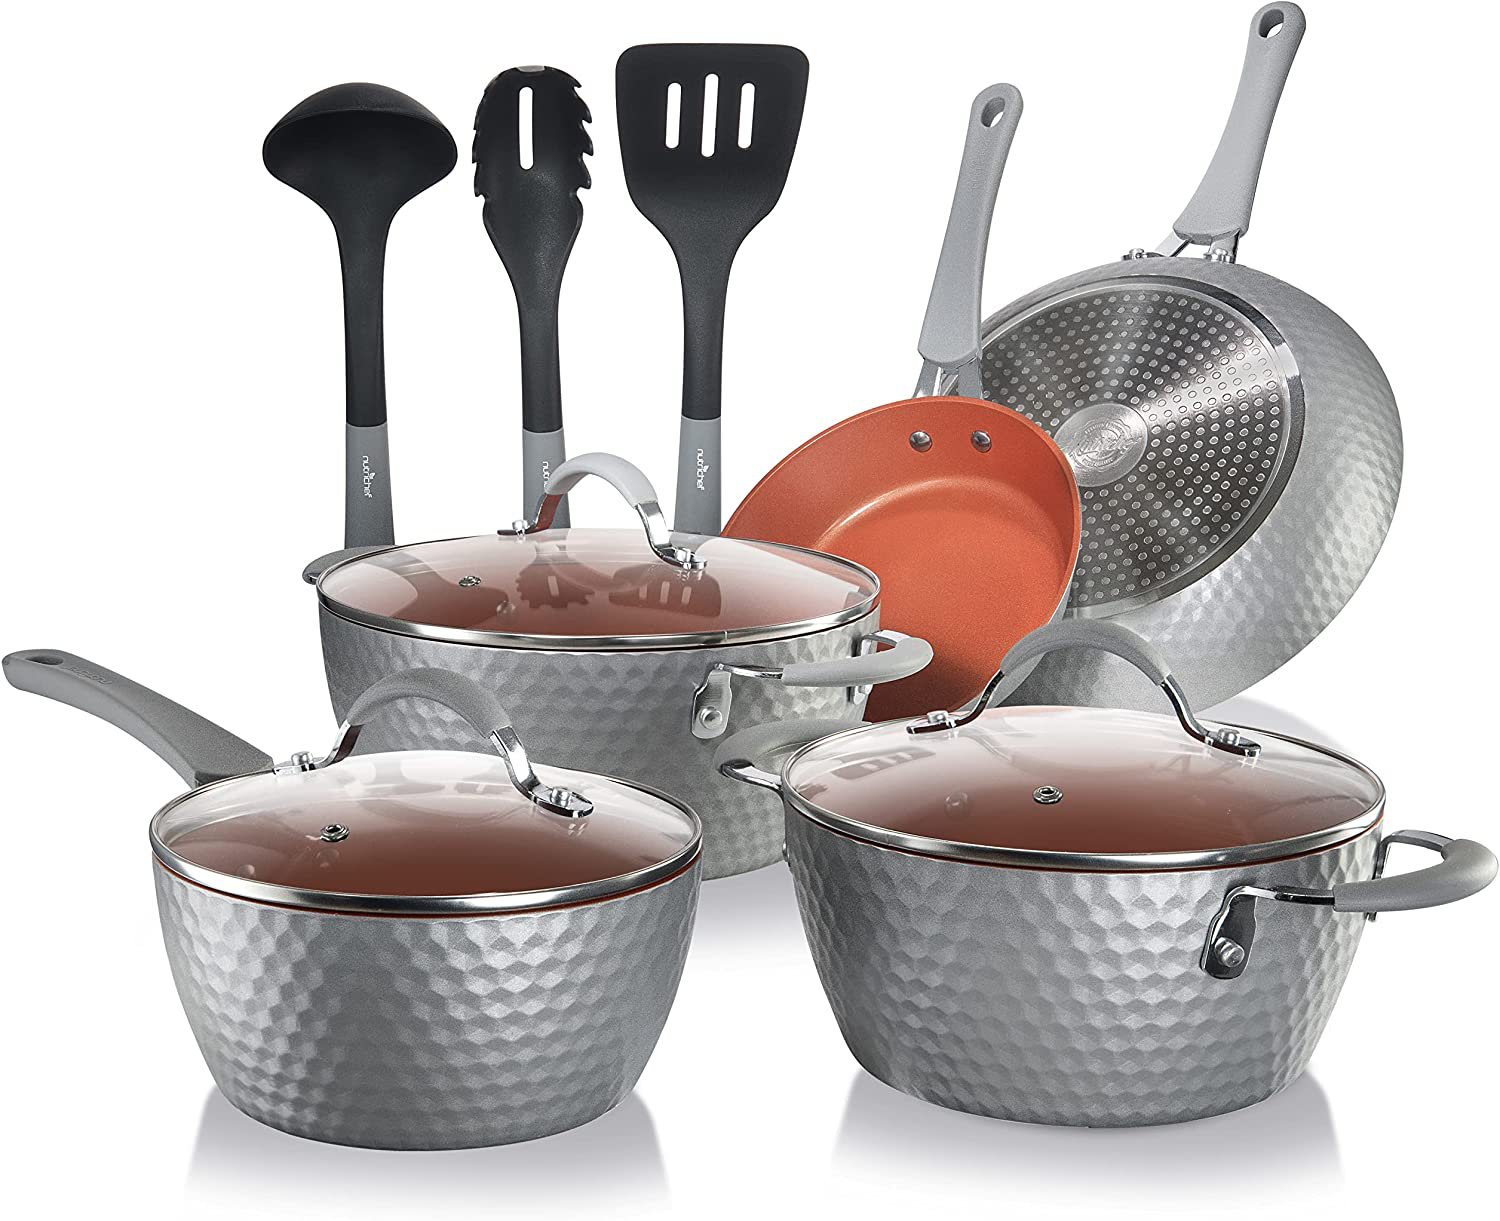 https://assets.wfcdn.com/im/03886340/compr-r85/2342/234297416/11-piece-non-stick-aluminum-cookware-set.jpg